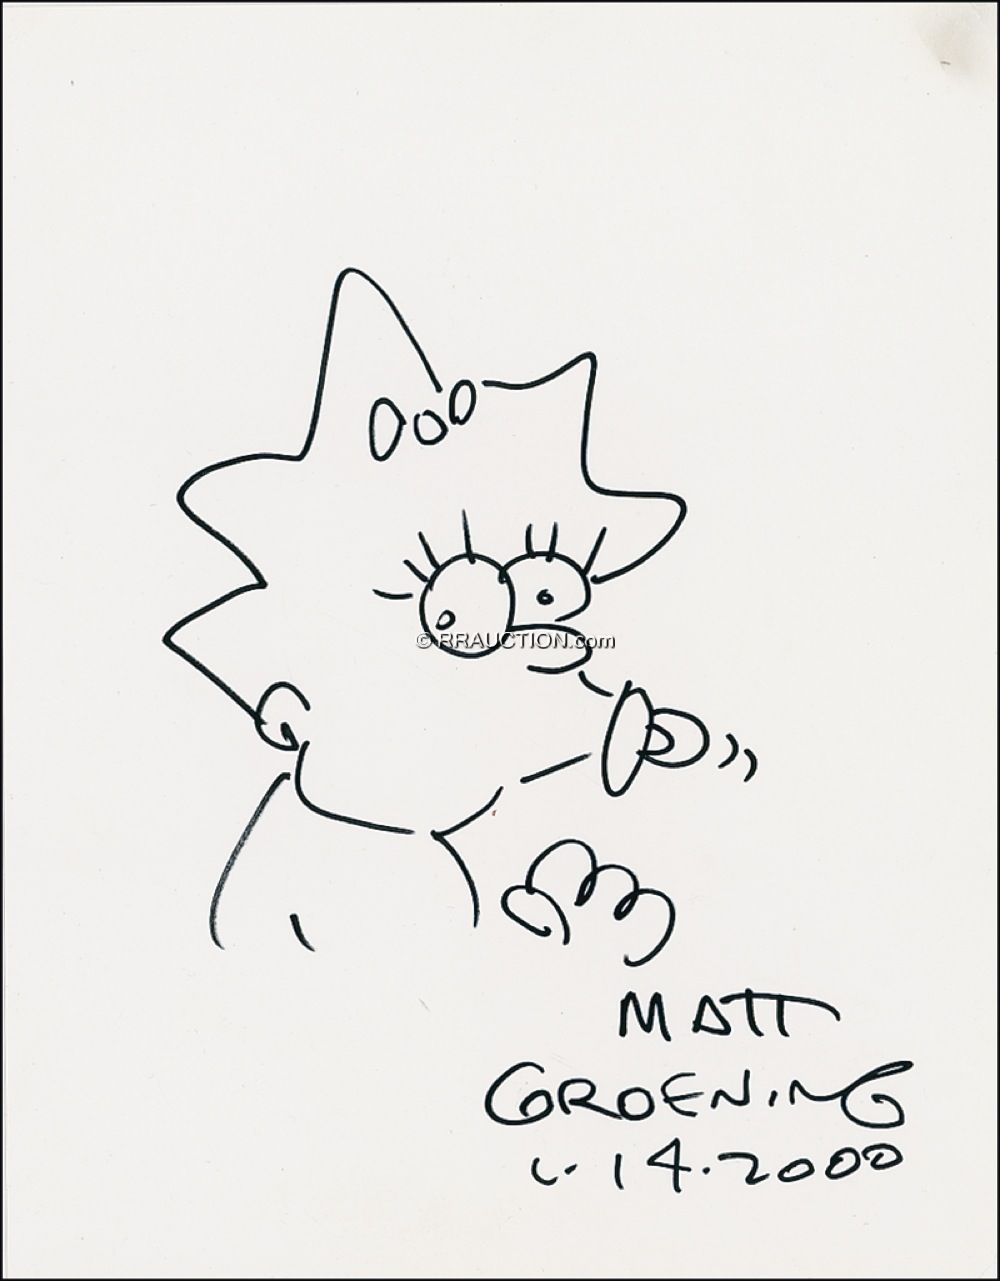 Lot #679 Matt Groening